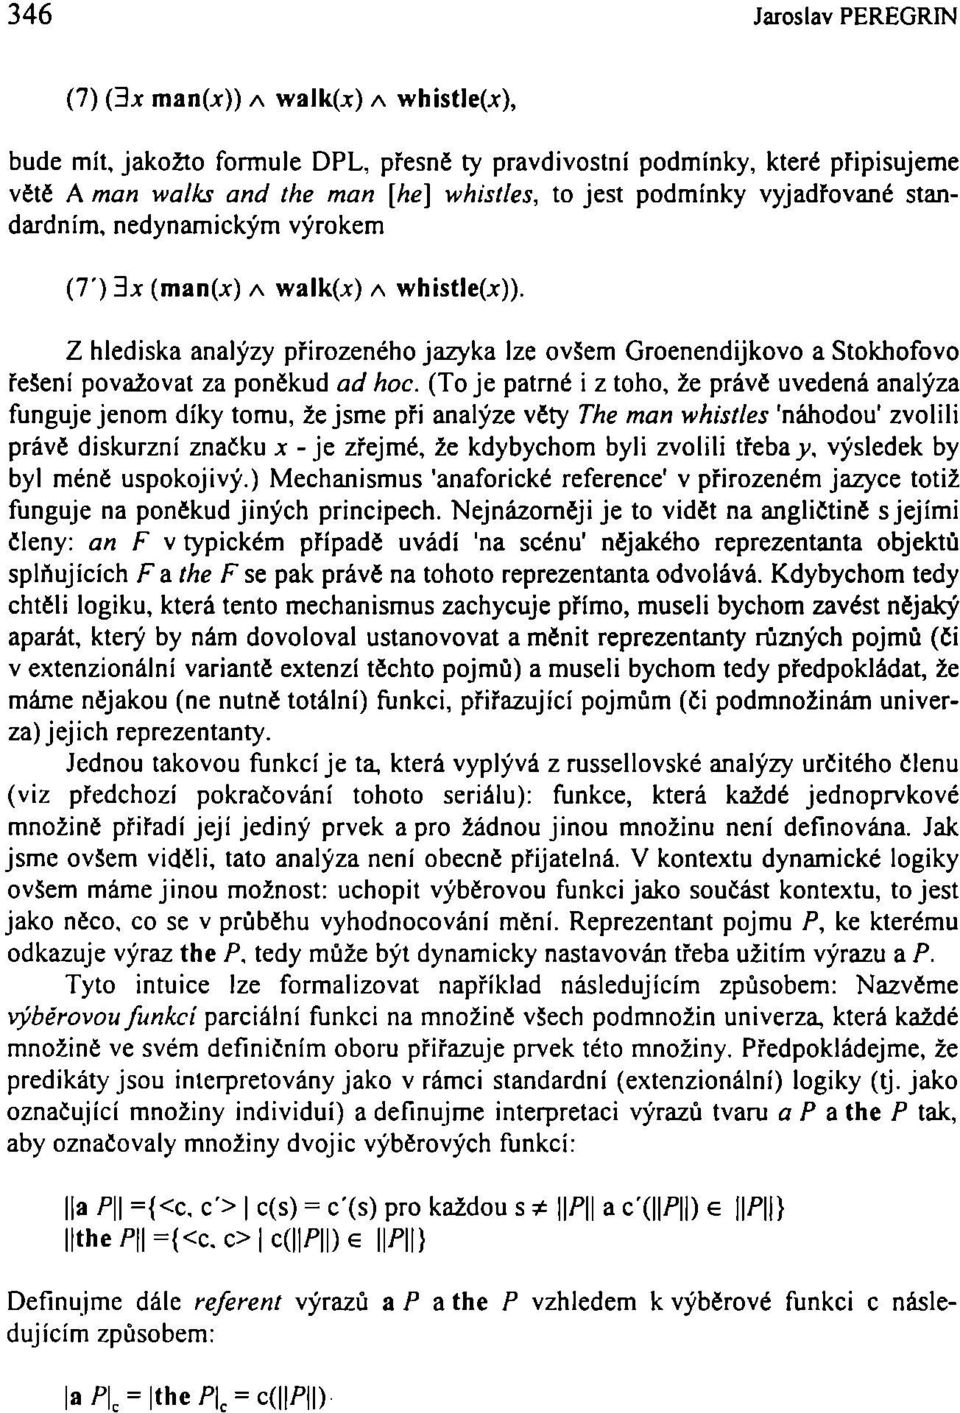 3* (man(^) A walk(^) A whistle(j:)). Z hlediska analýzy přirozeného jazyka lze ovšem Groenendijkovo a Stokhofovo řešení považovat za poněkud ad hoc.